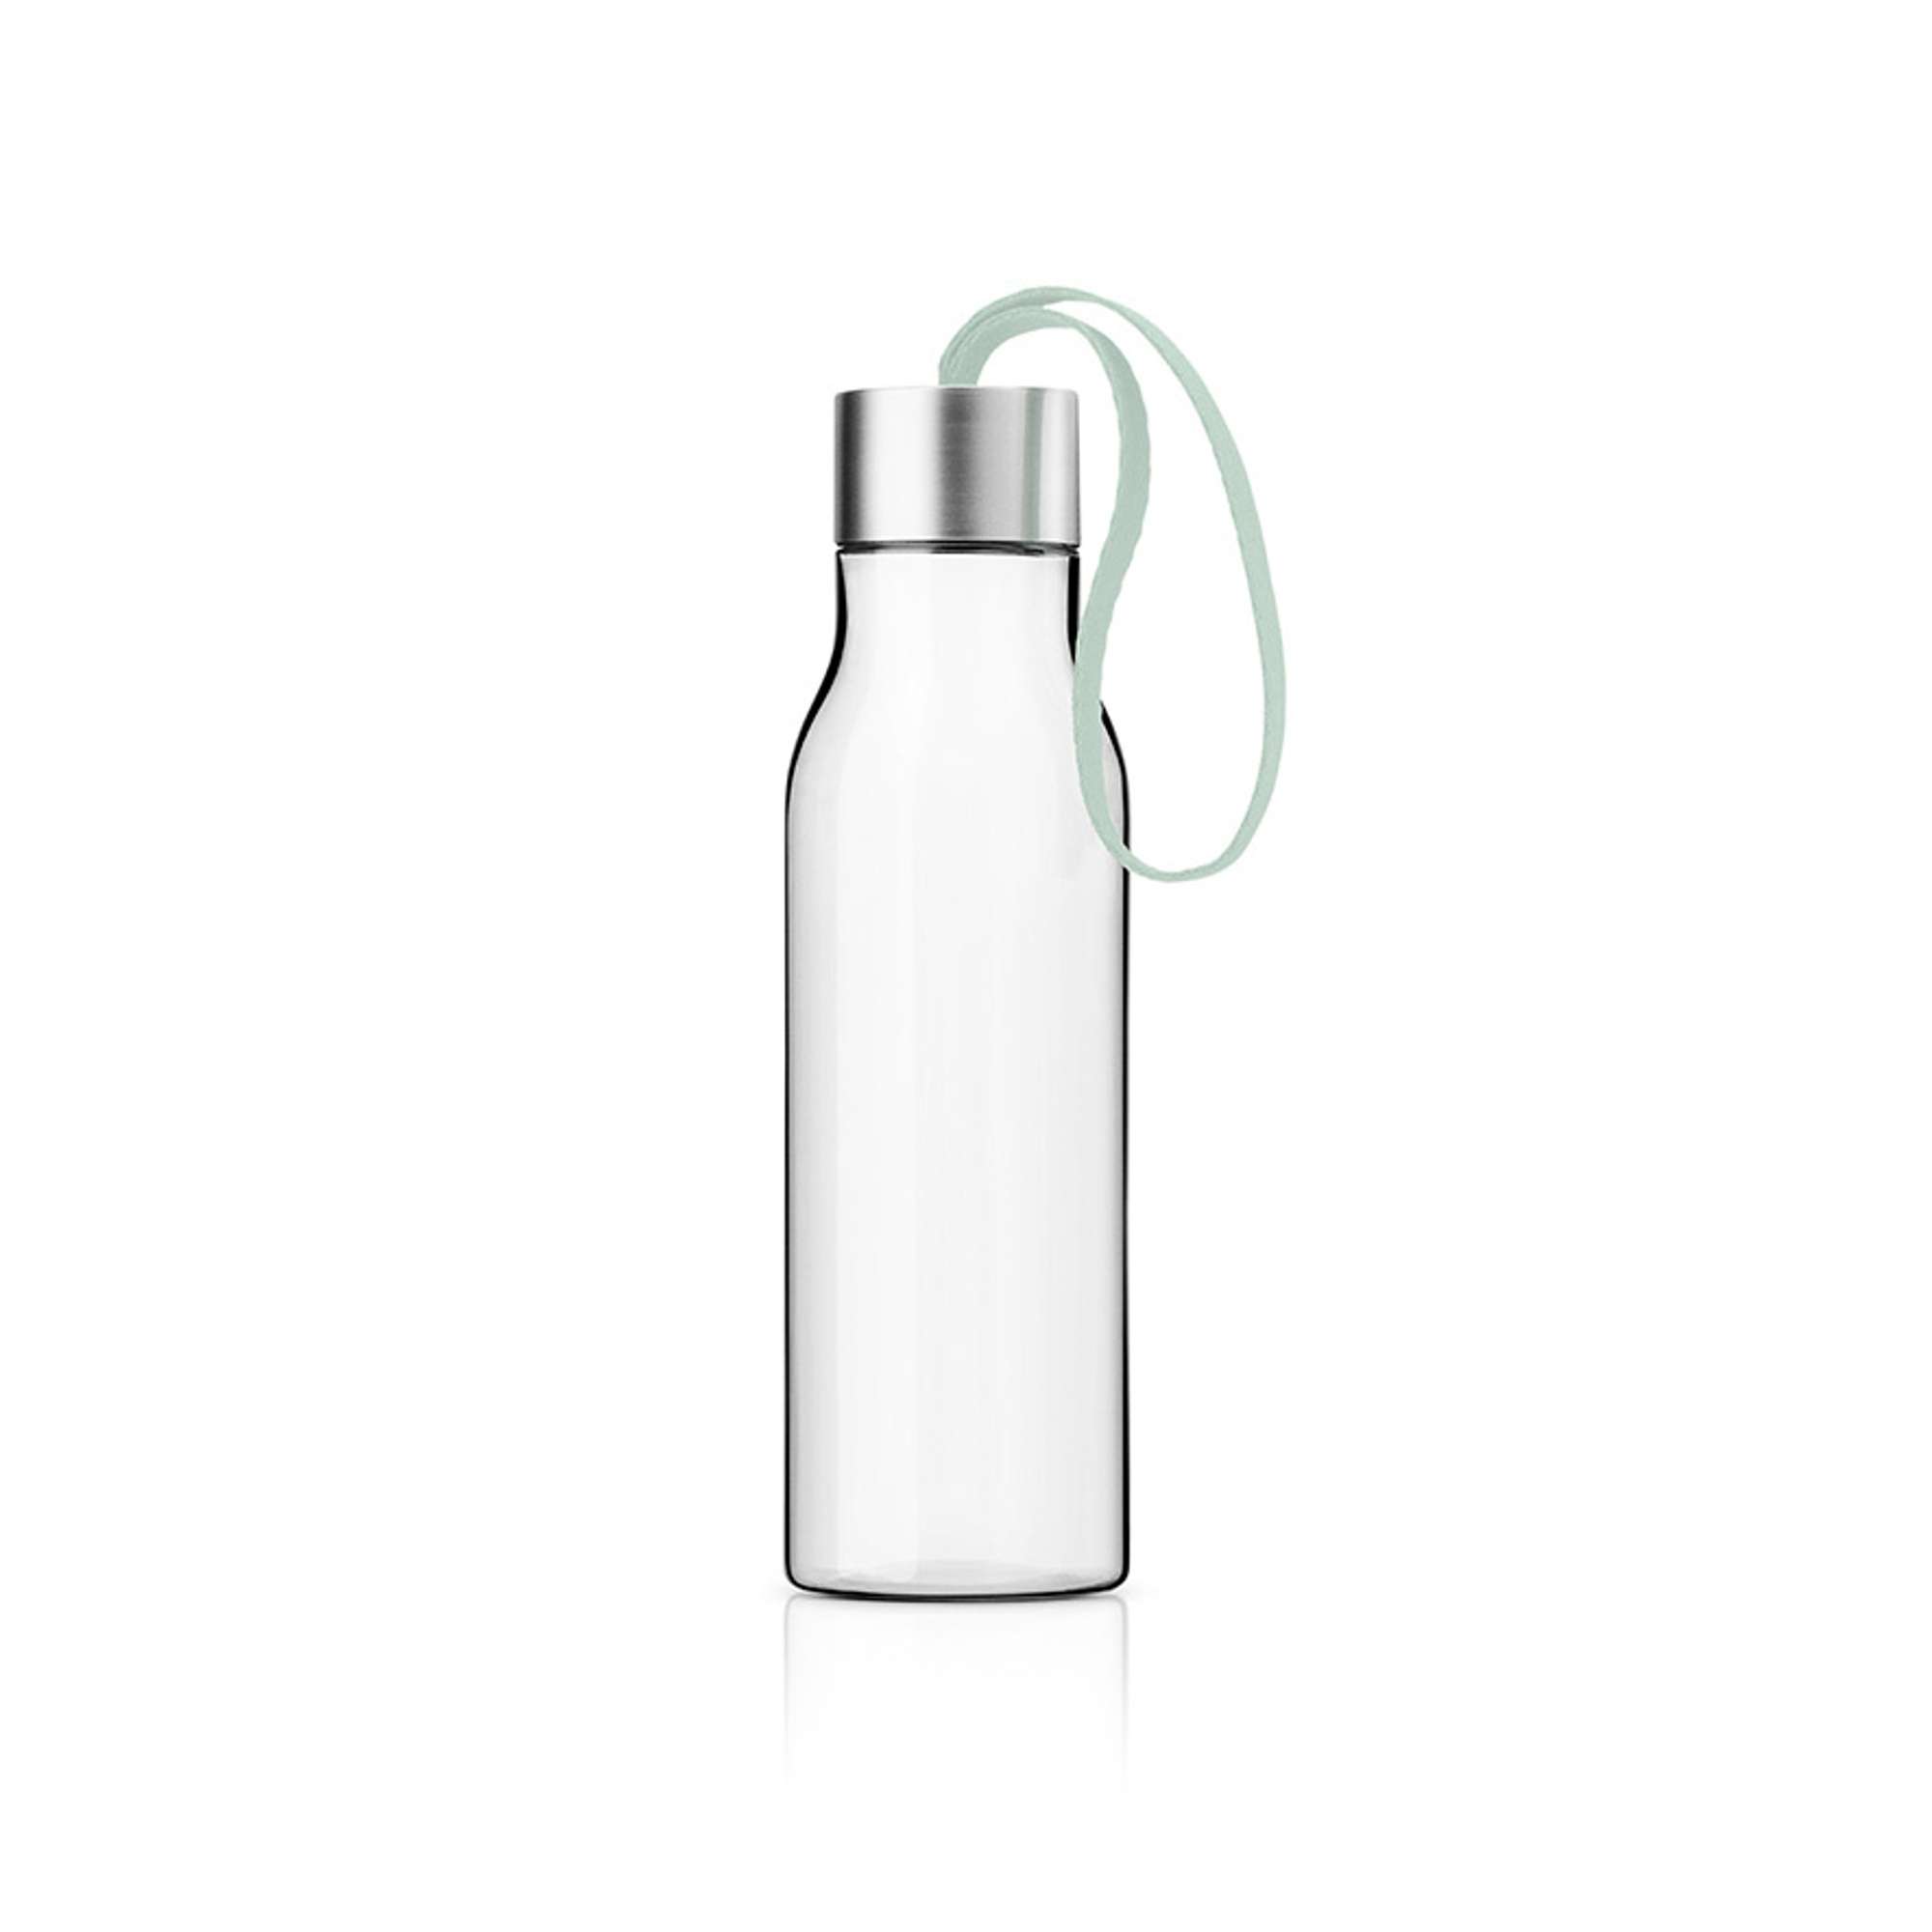 Drinking bottle - 0.5 litres - Sage